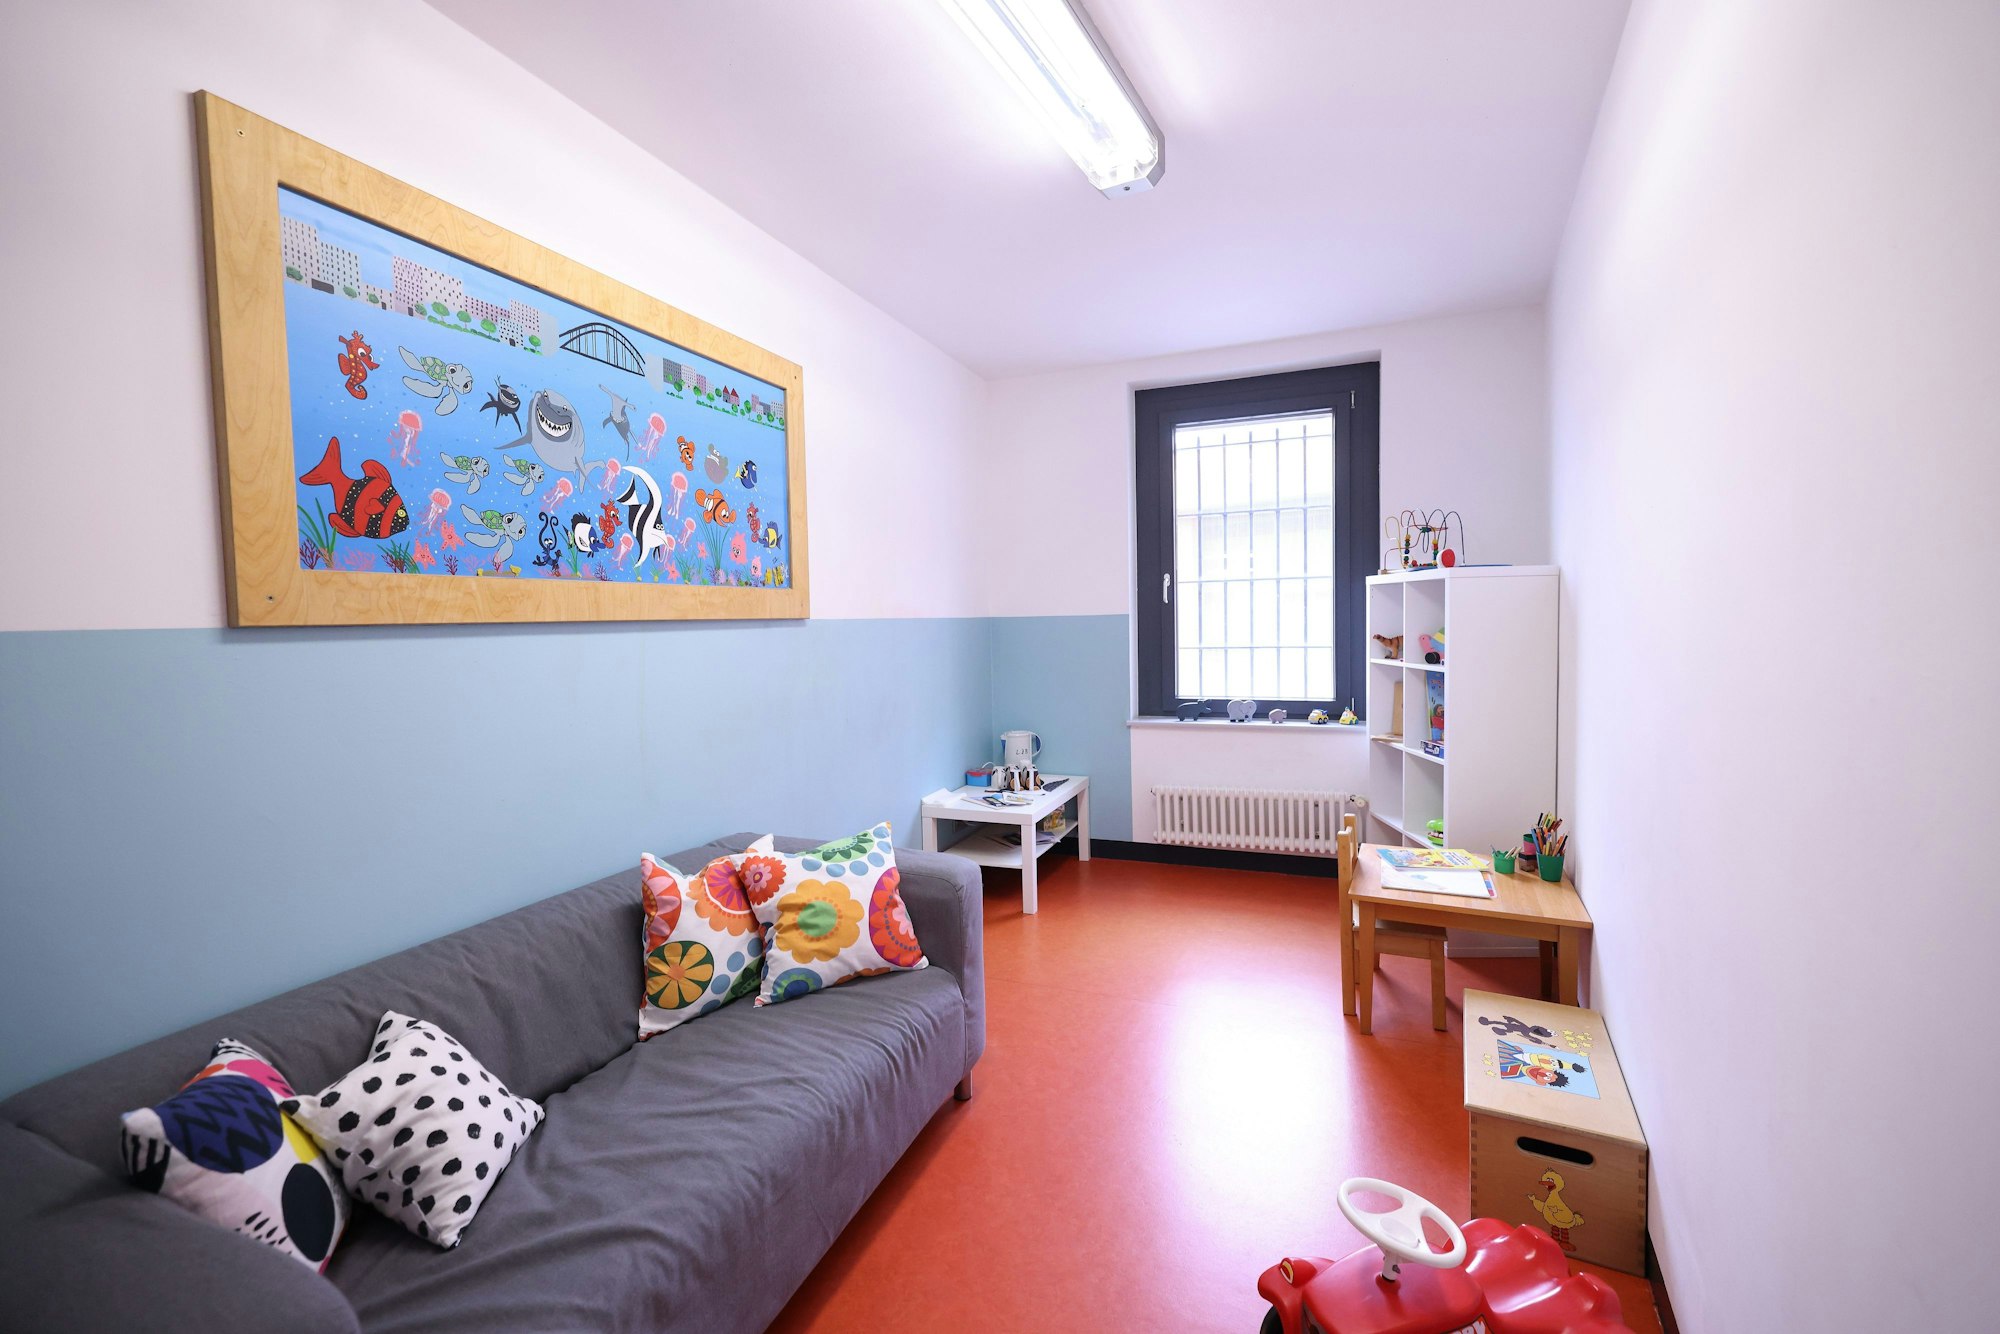 Die Vollzugsanstalten Willich I und II sind zwei von sechs Schwerpunktanstalten für familiensensible Vollzugsgestaltung in NRW. In Deutschland sind laut Ministerium rund 100 000 Kinder von der Inhaftierung eines Elternteils betroffen.